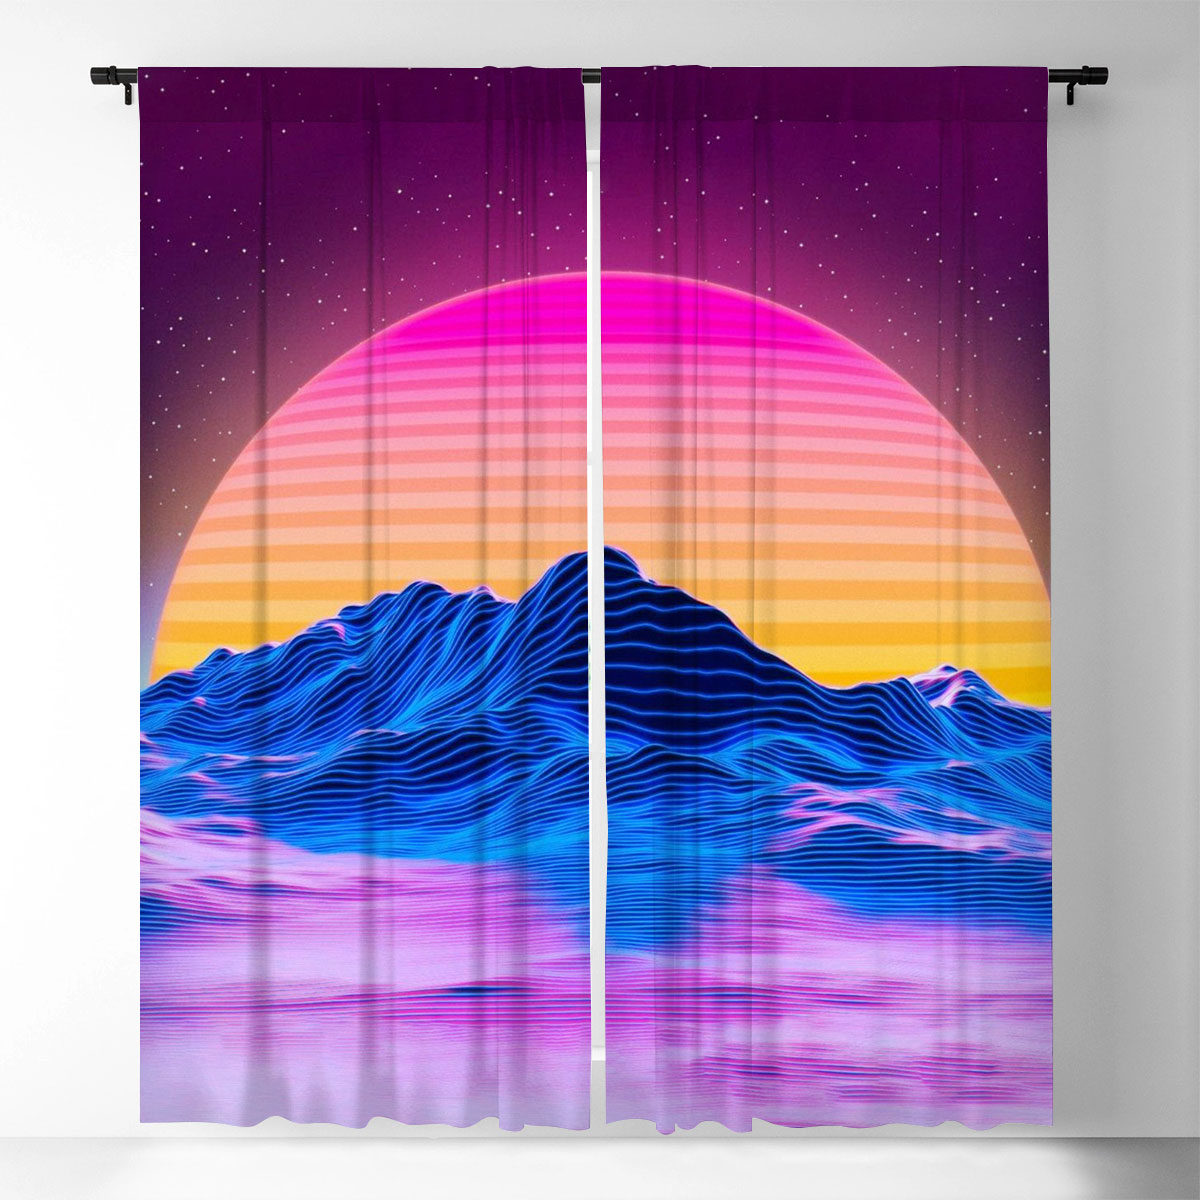 Aesthetic Sunset Window Curtain